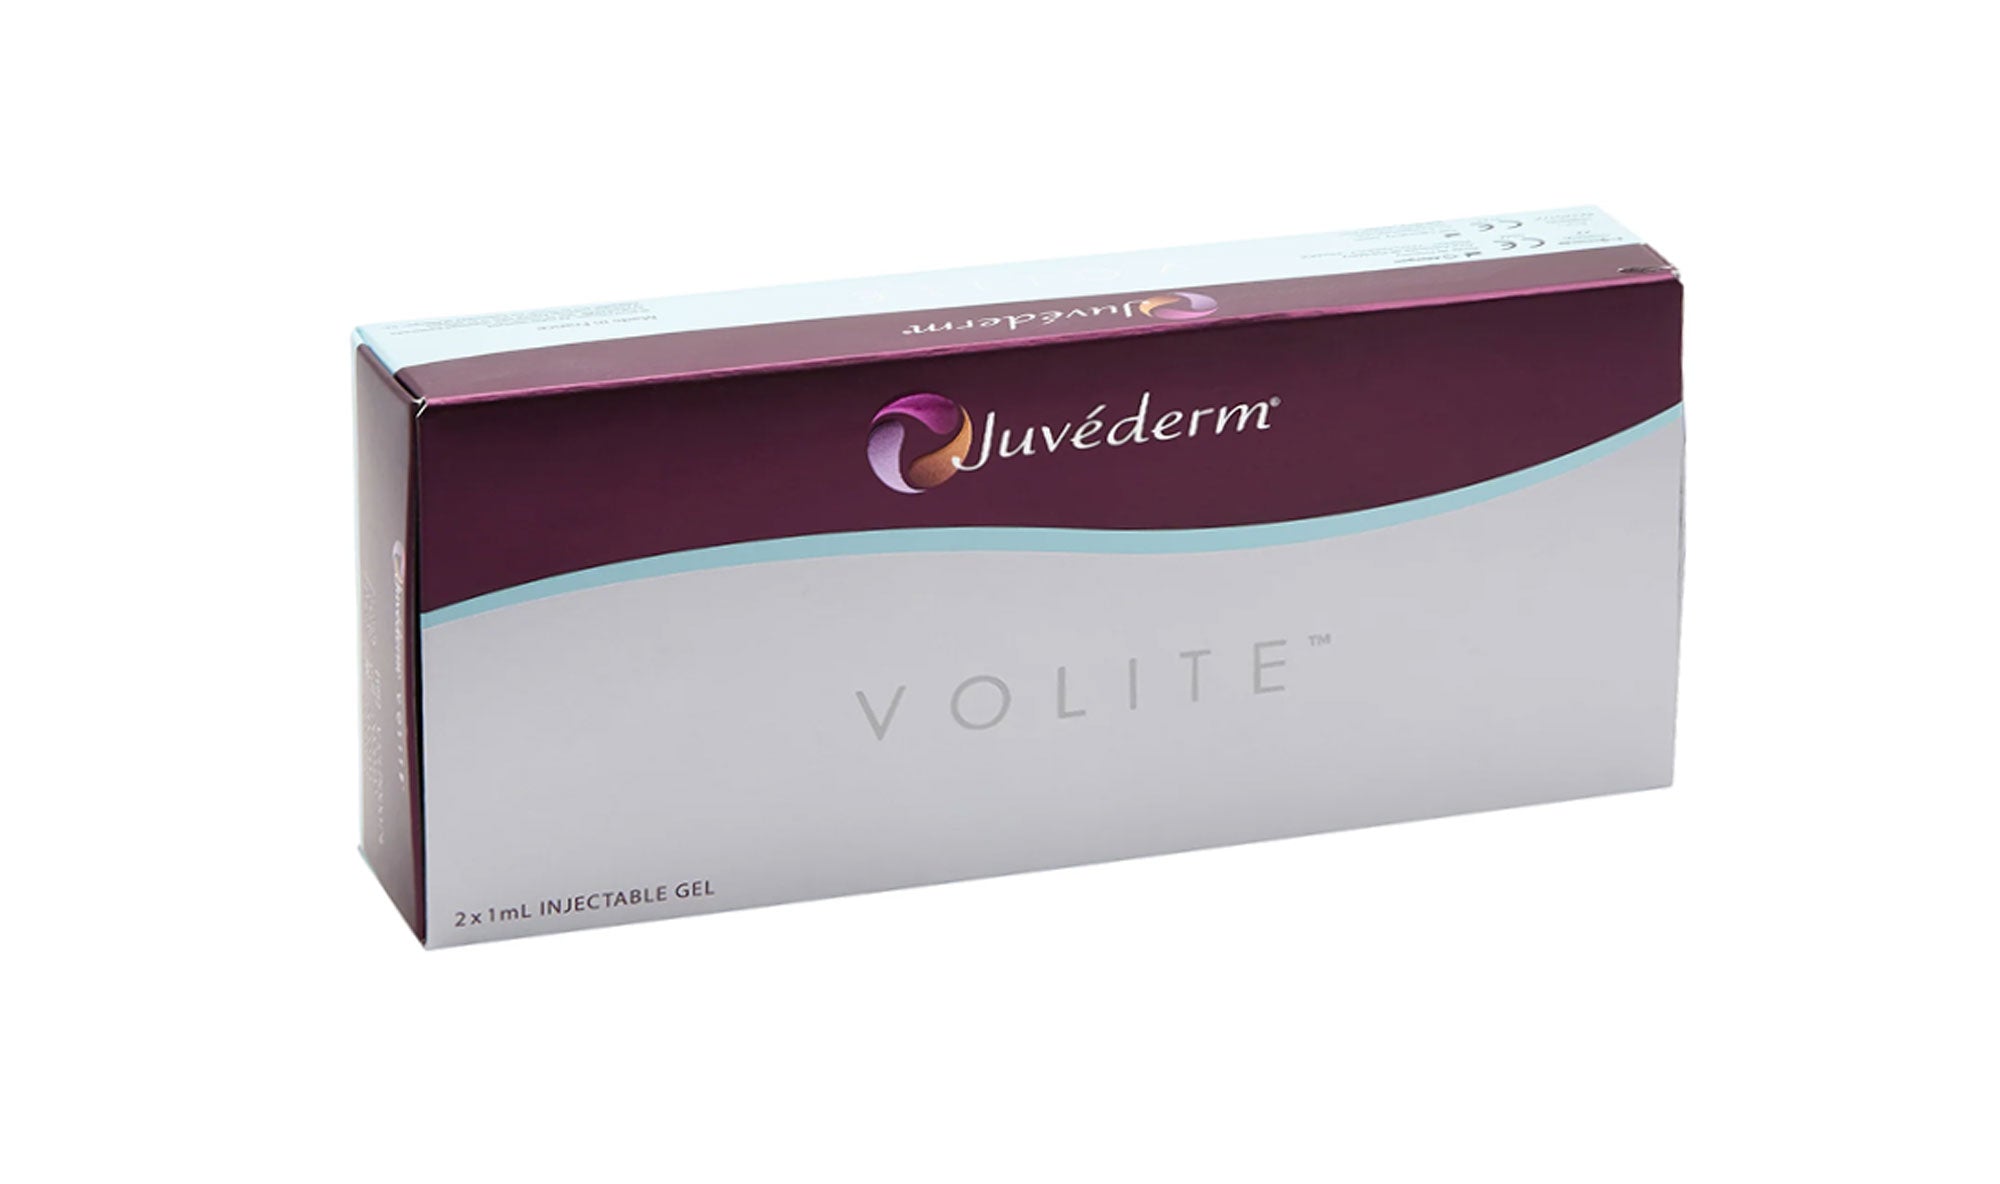 Juvèderm Volite - confezione con 2 siringhe da 1 ml